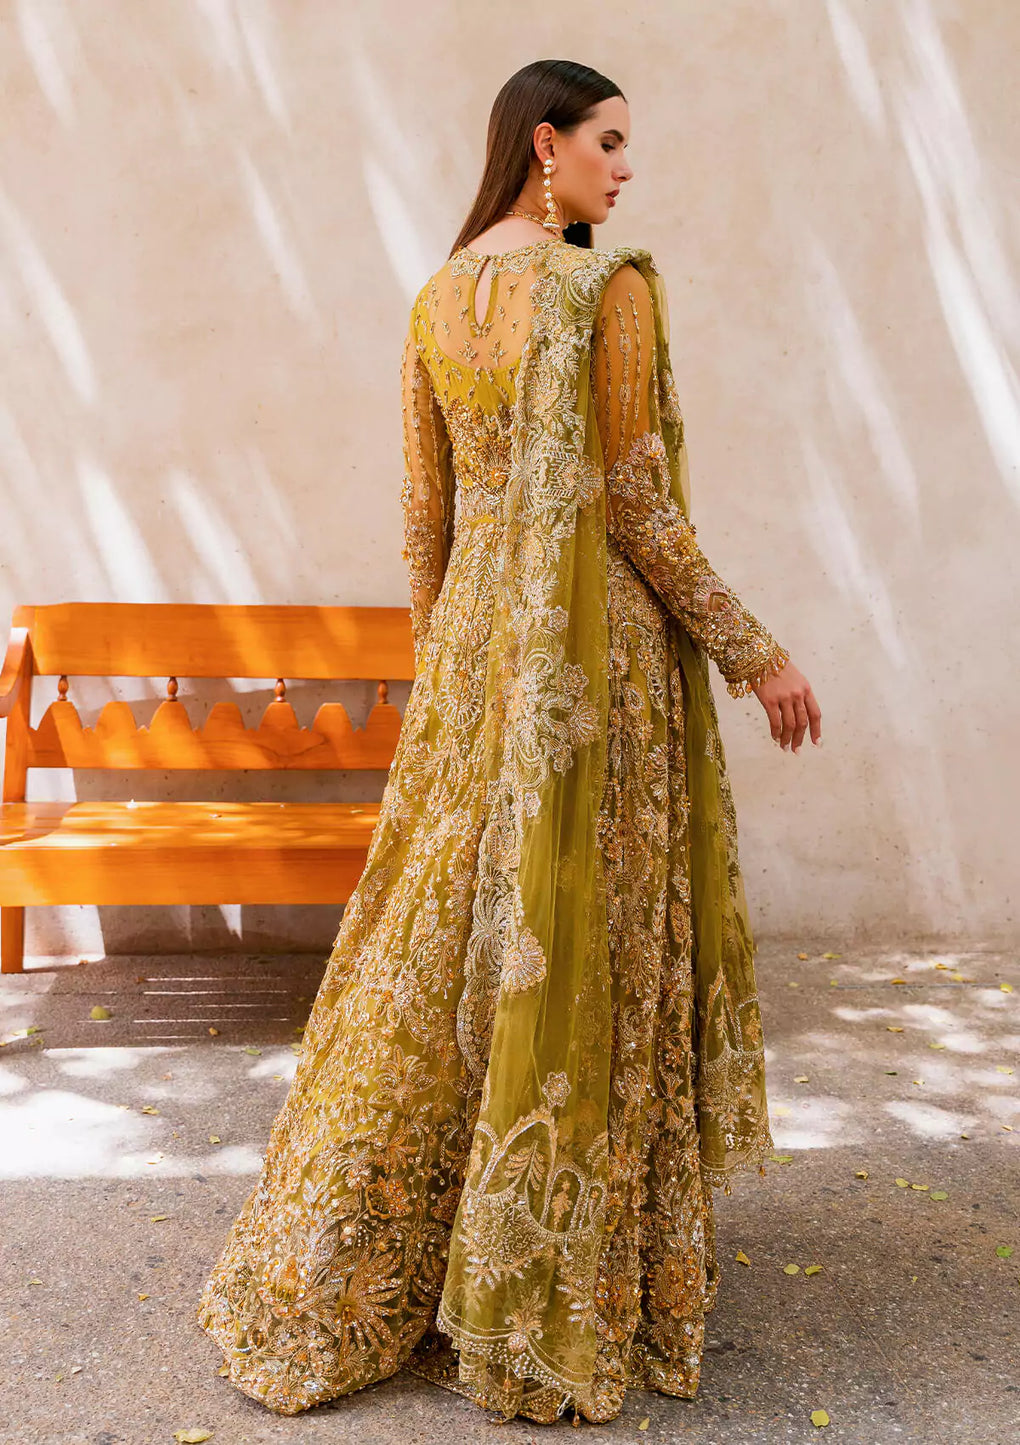 Buy Now, HENNA - Evara - Wedding Festive 2023 - Elaf Premium - Wedding and Bridal Party Dresses - Shahana Collection UK 